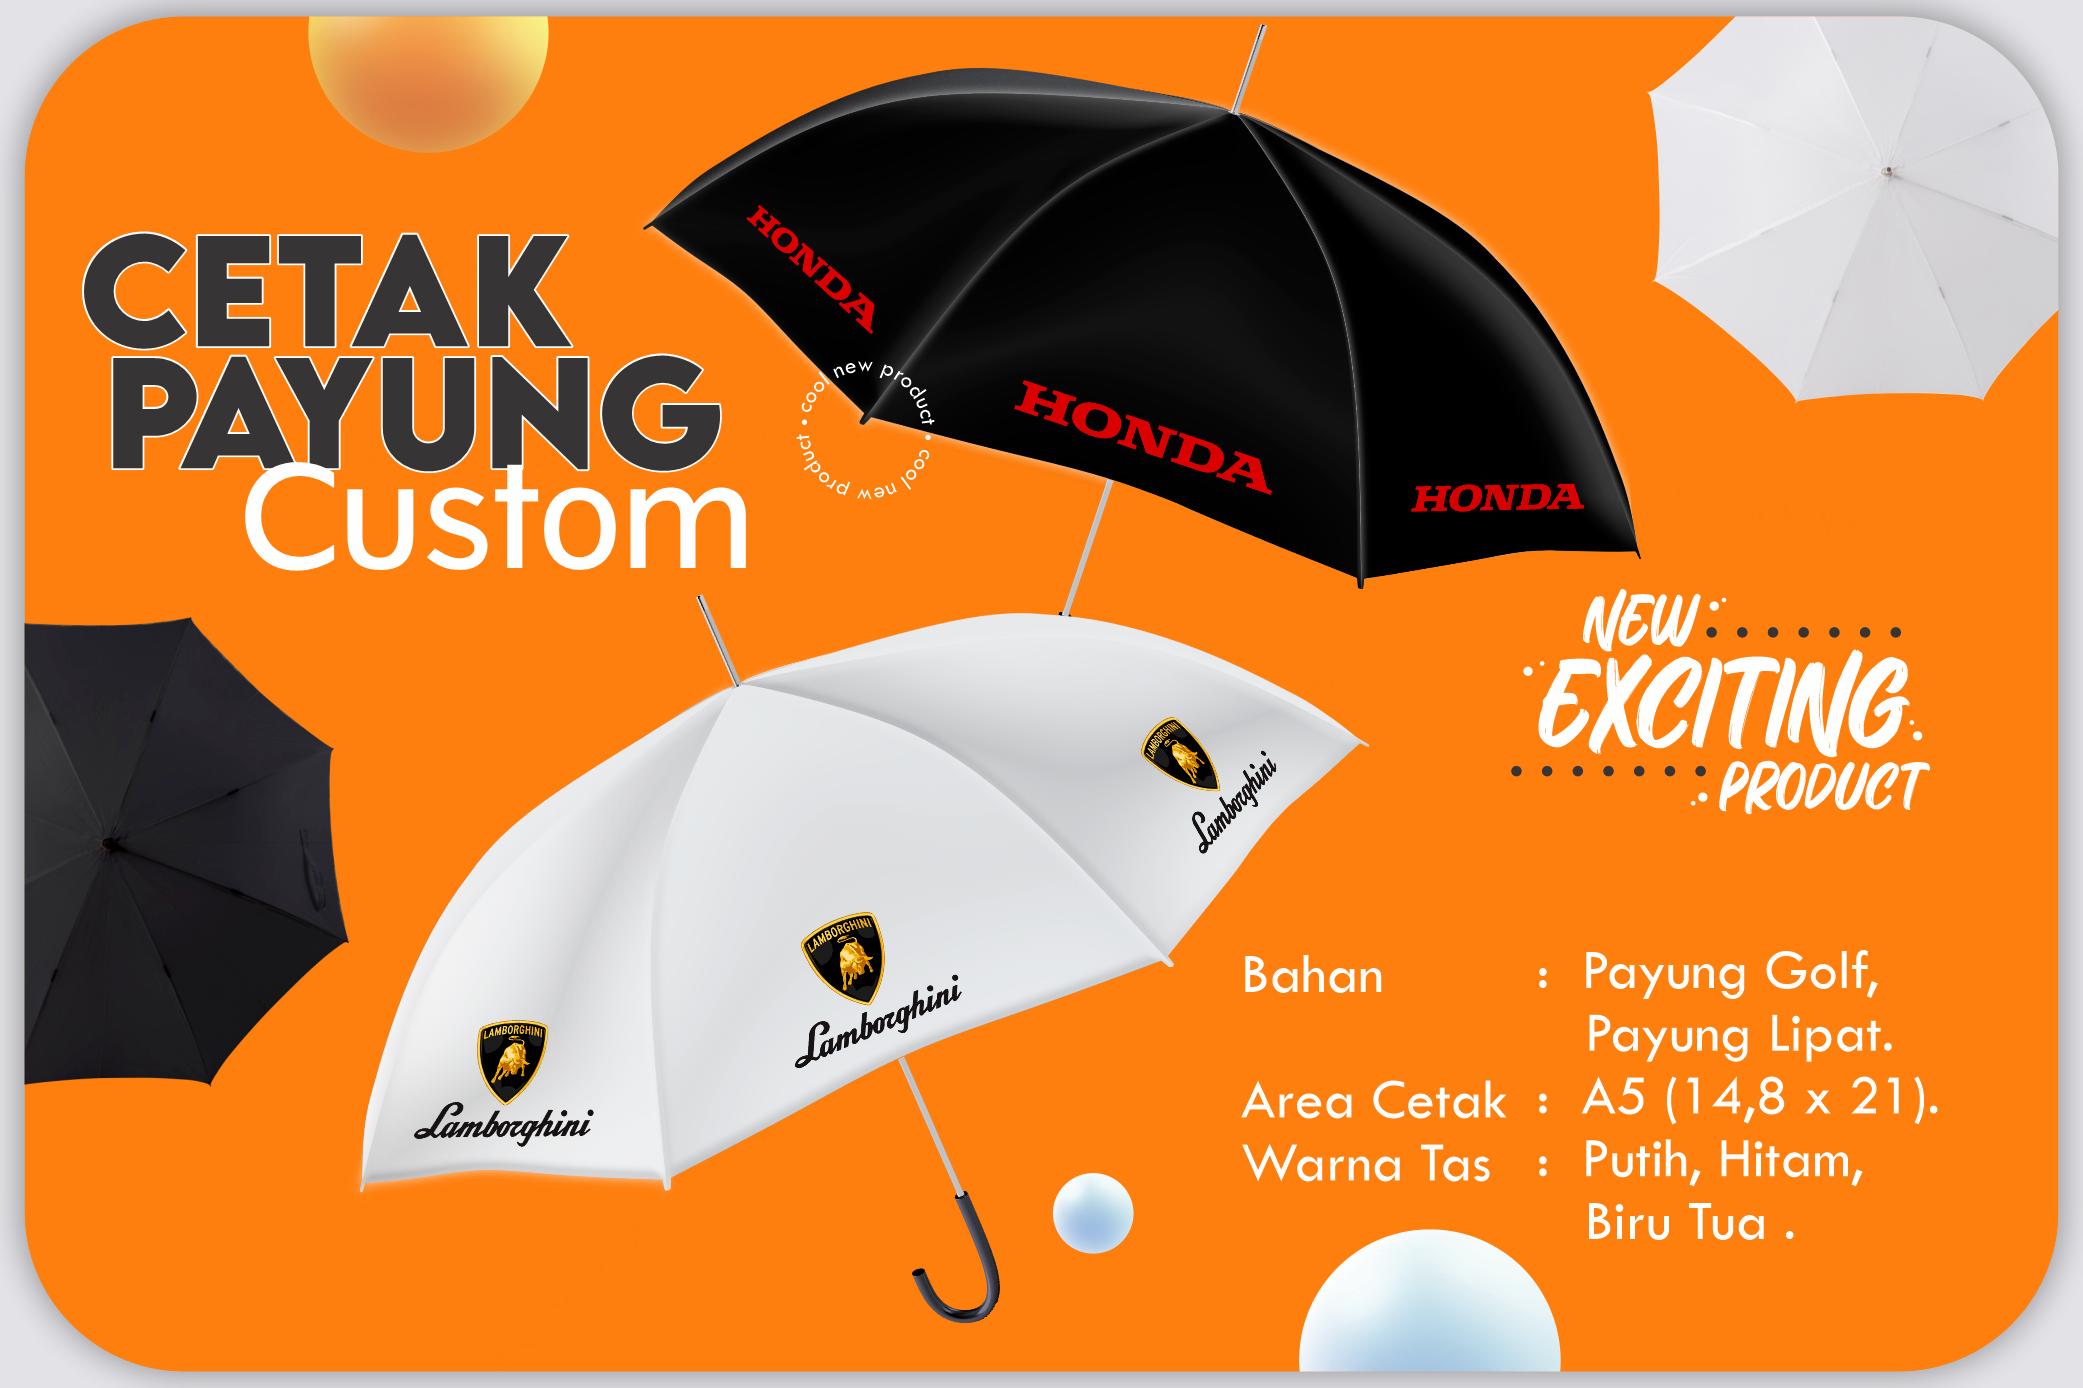 payung-custom-new-product-eka-printing-monang-maning